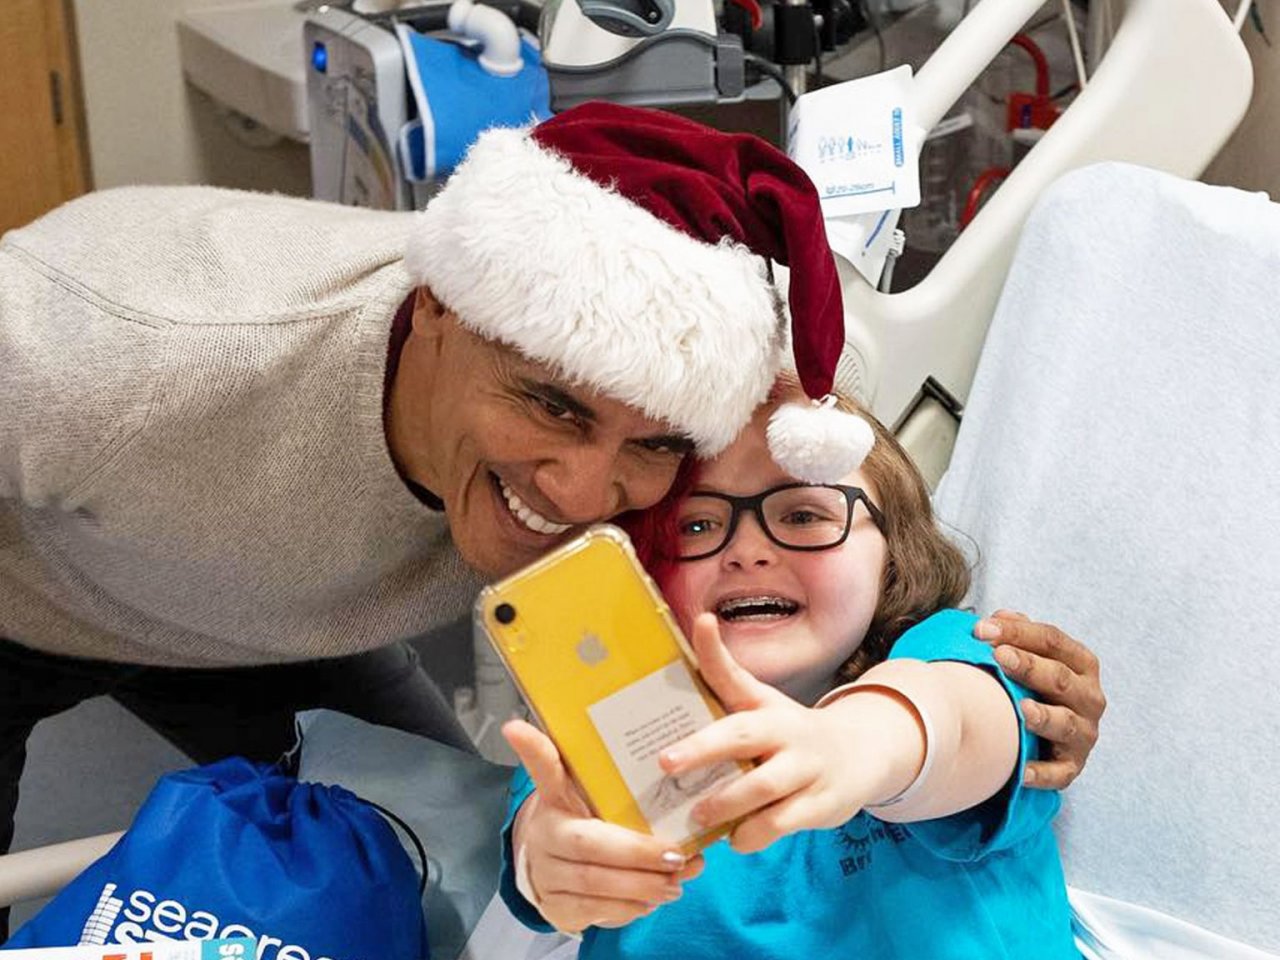 歐巴馬扮聖誕老人 現身醫院訪病童